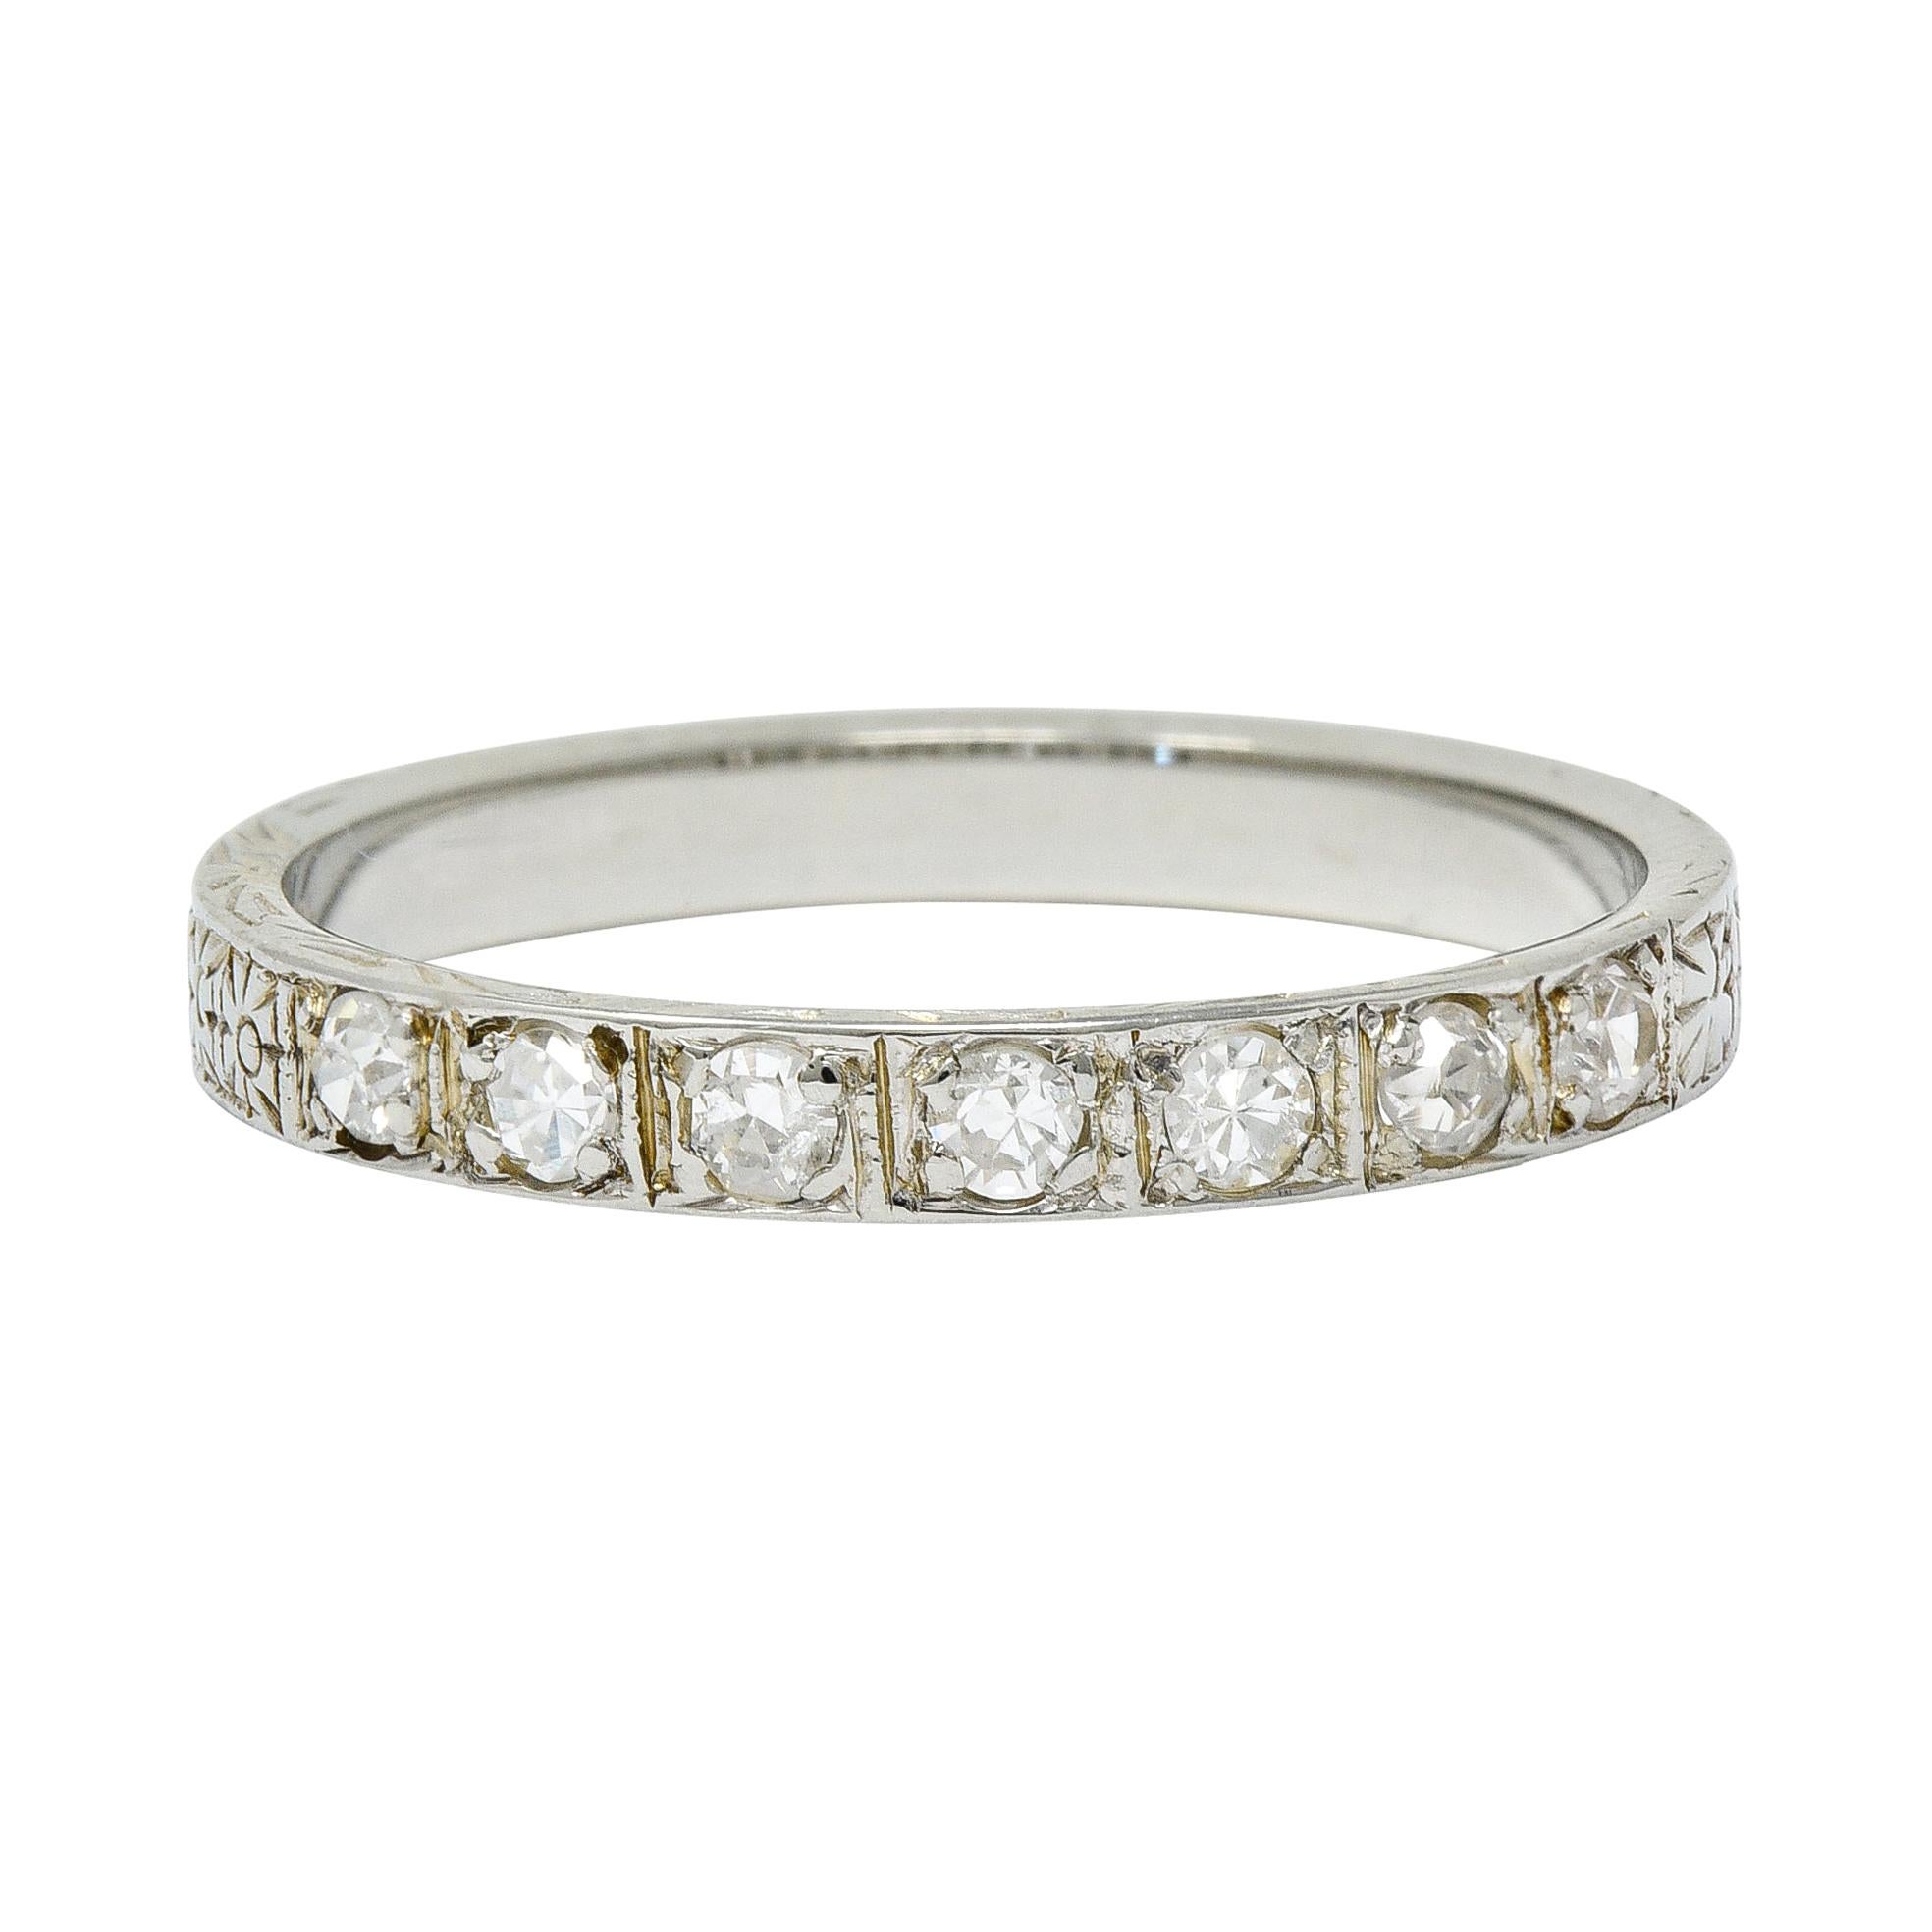 1925 Art Deco Diamond 18 Karat White Gold Orange Blossom Band Ring